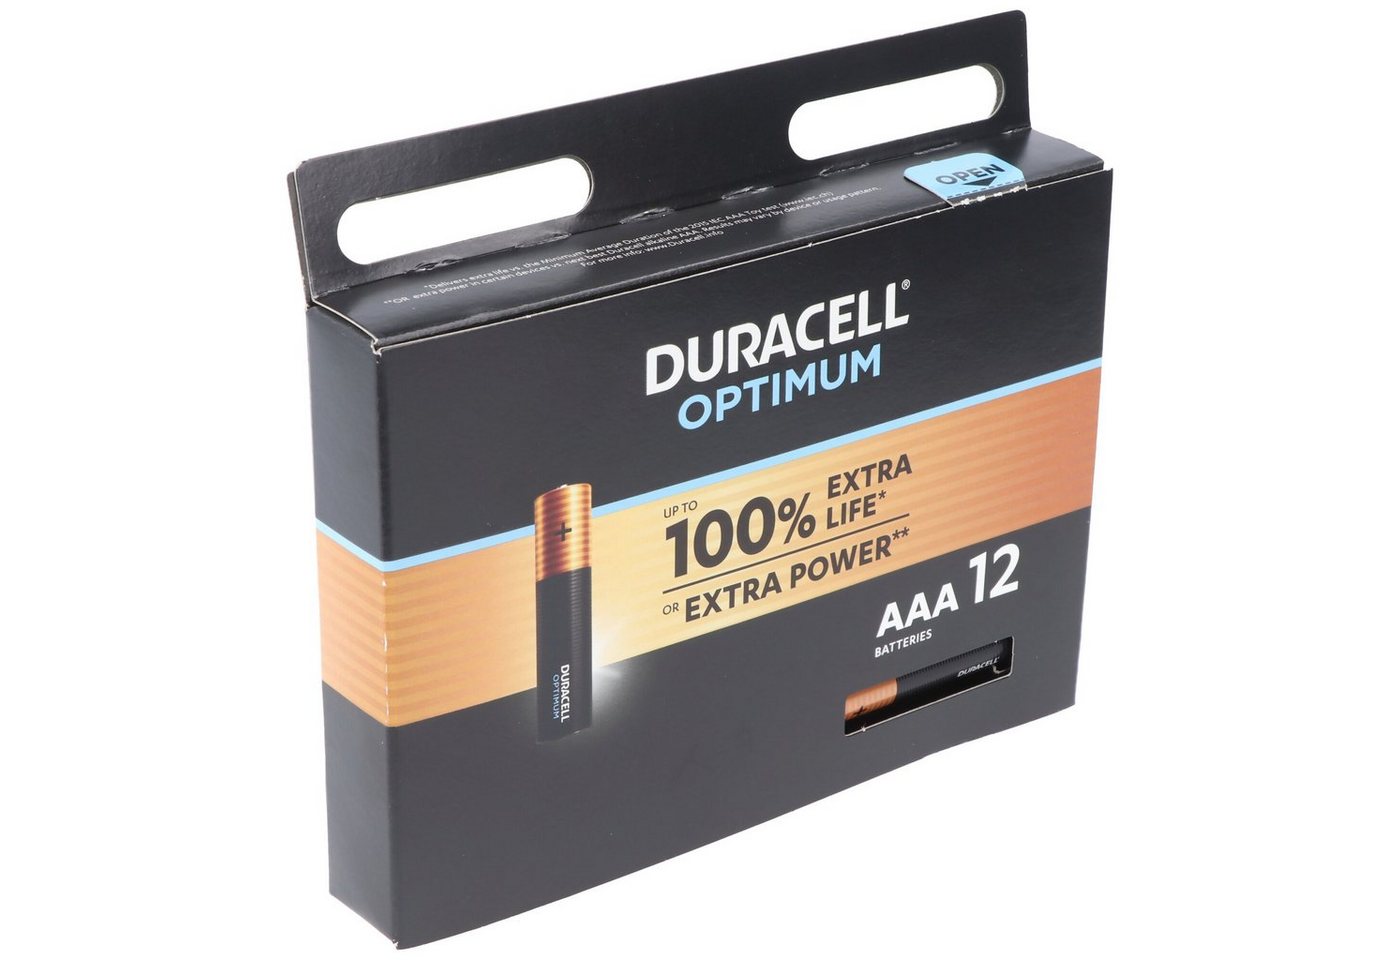 Duracell Duracell Optimum AAA Mignon Alkaline-Batterien, 1.5V LR03 MX2400, 12e Batterie von Duracell